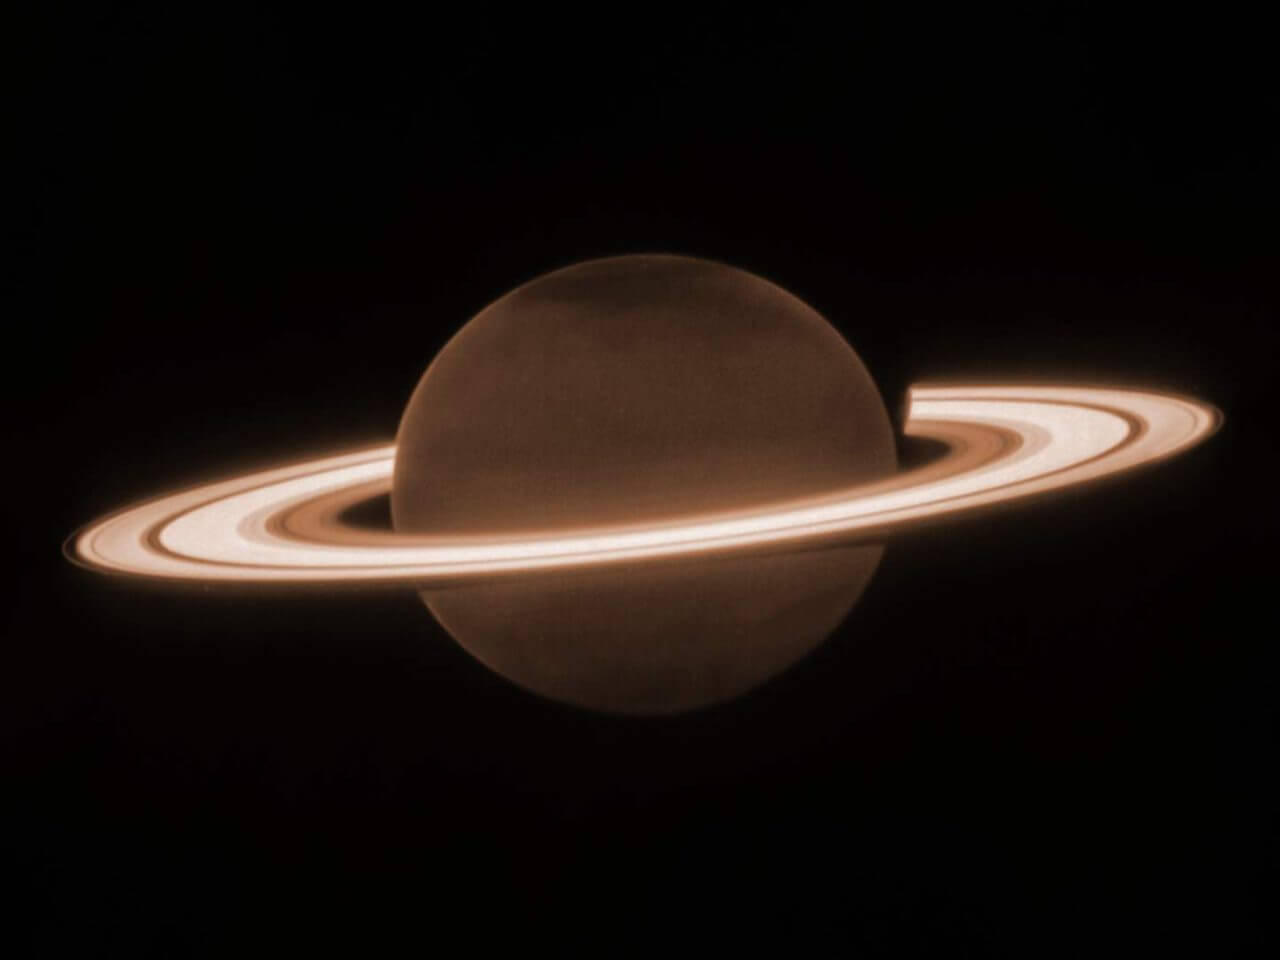 暗い本体と明るい環の「土星」【今日の宇宙画像】